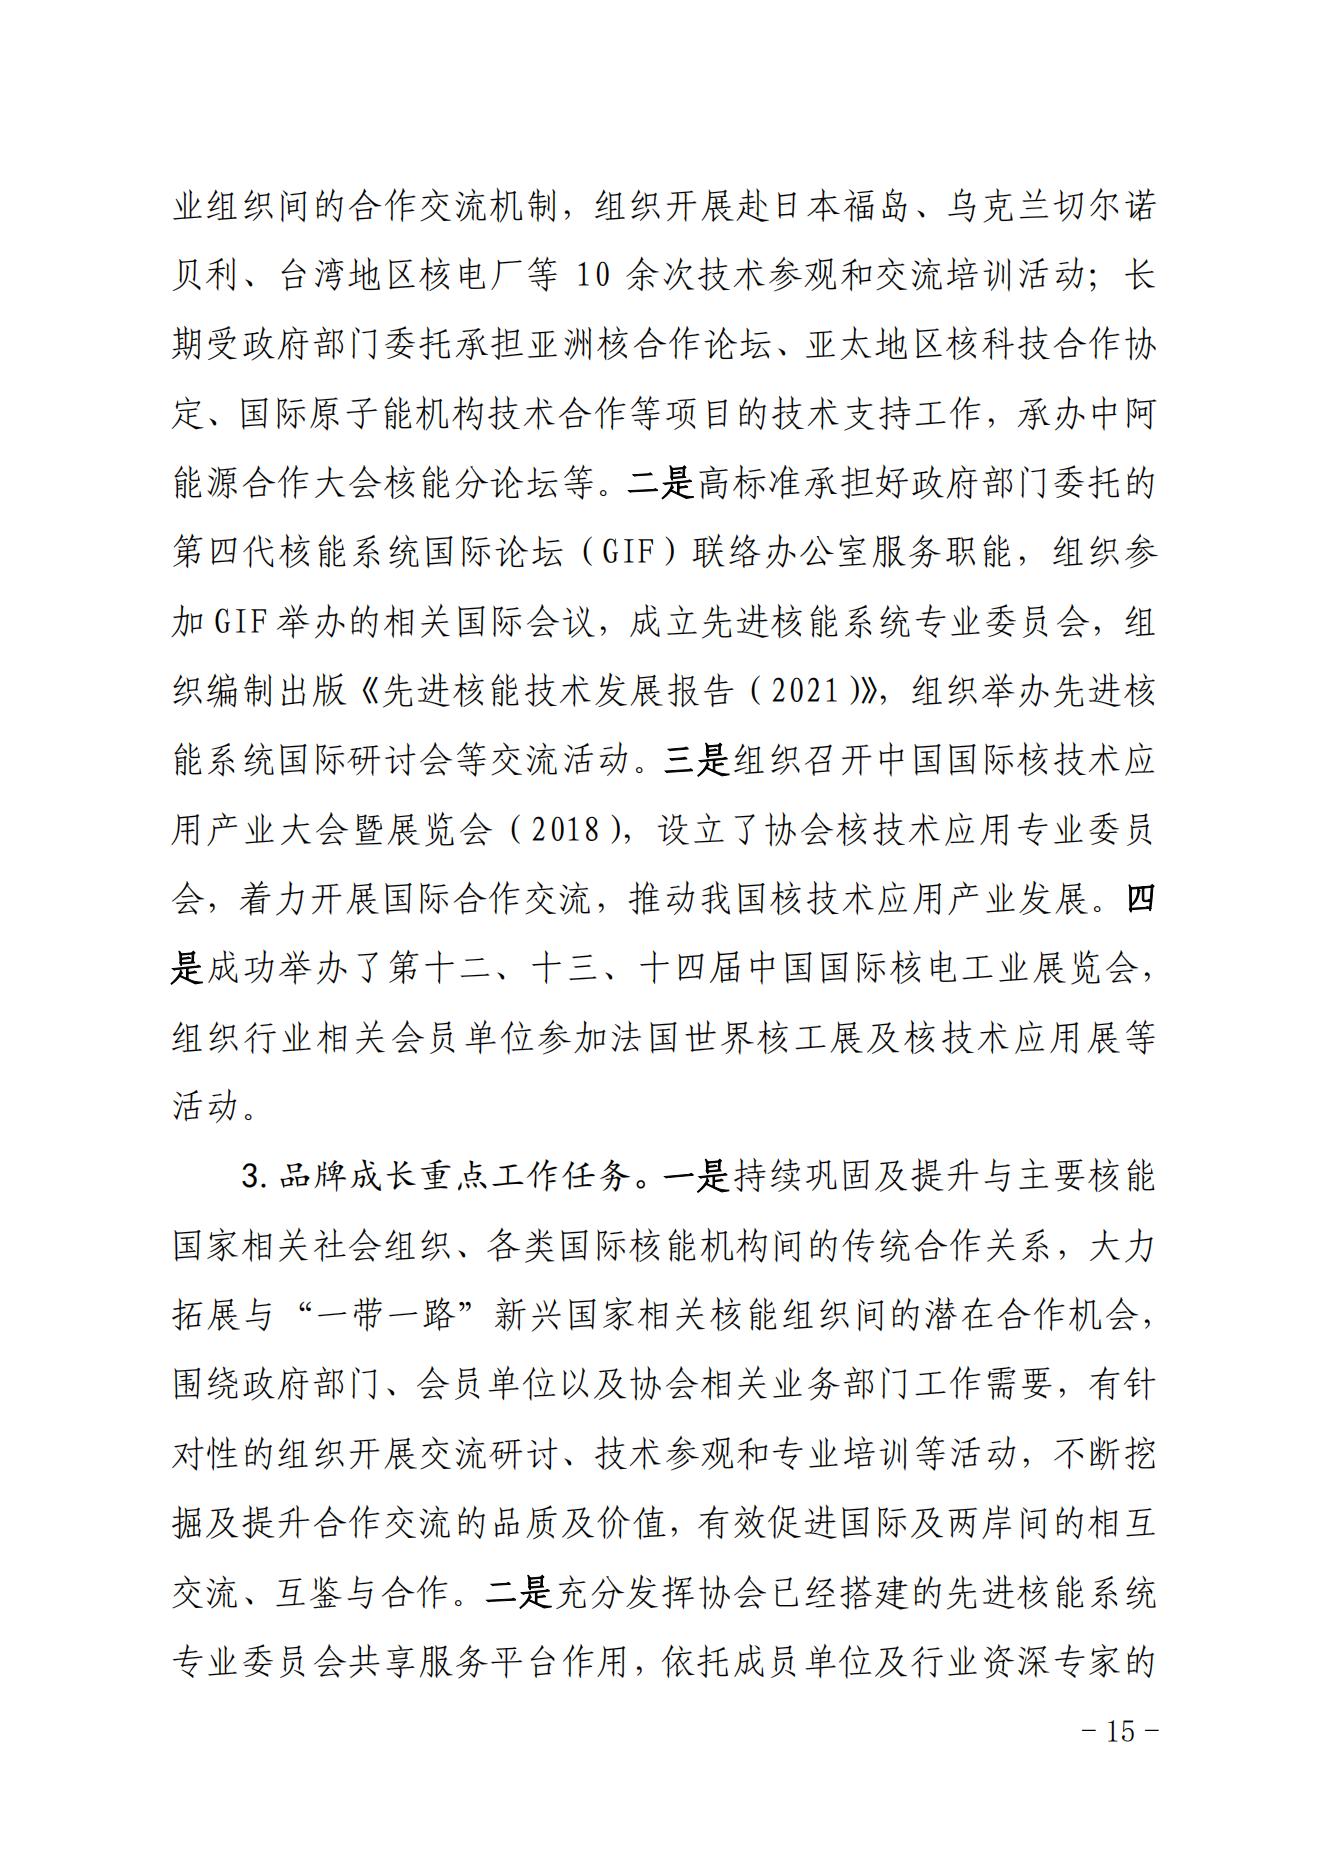 关于印发《中国核能行业协会“品牌协会成长计划”实施方案》的通知_14.jpg